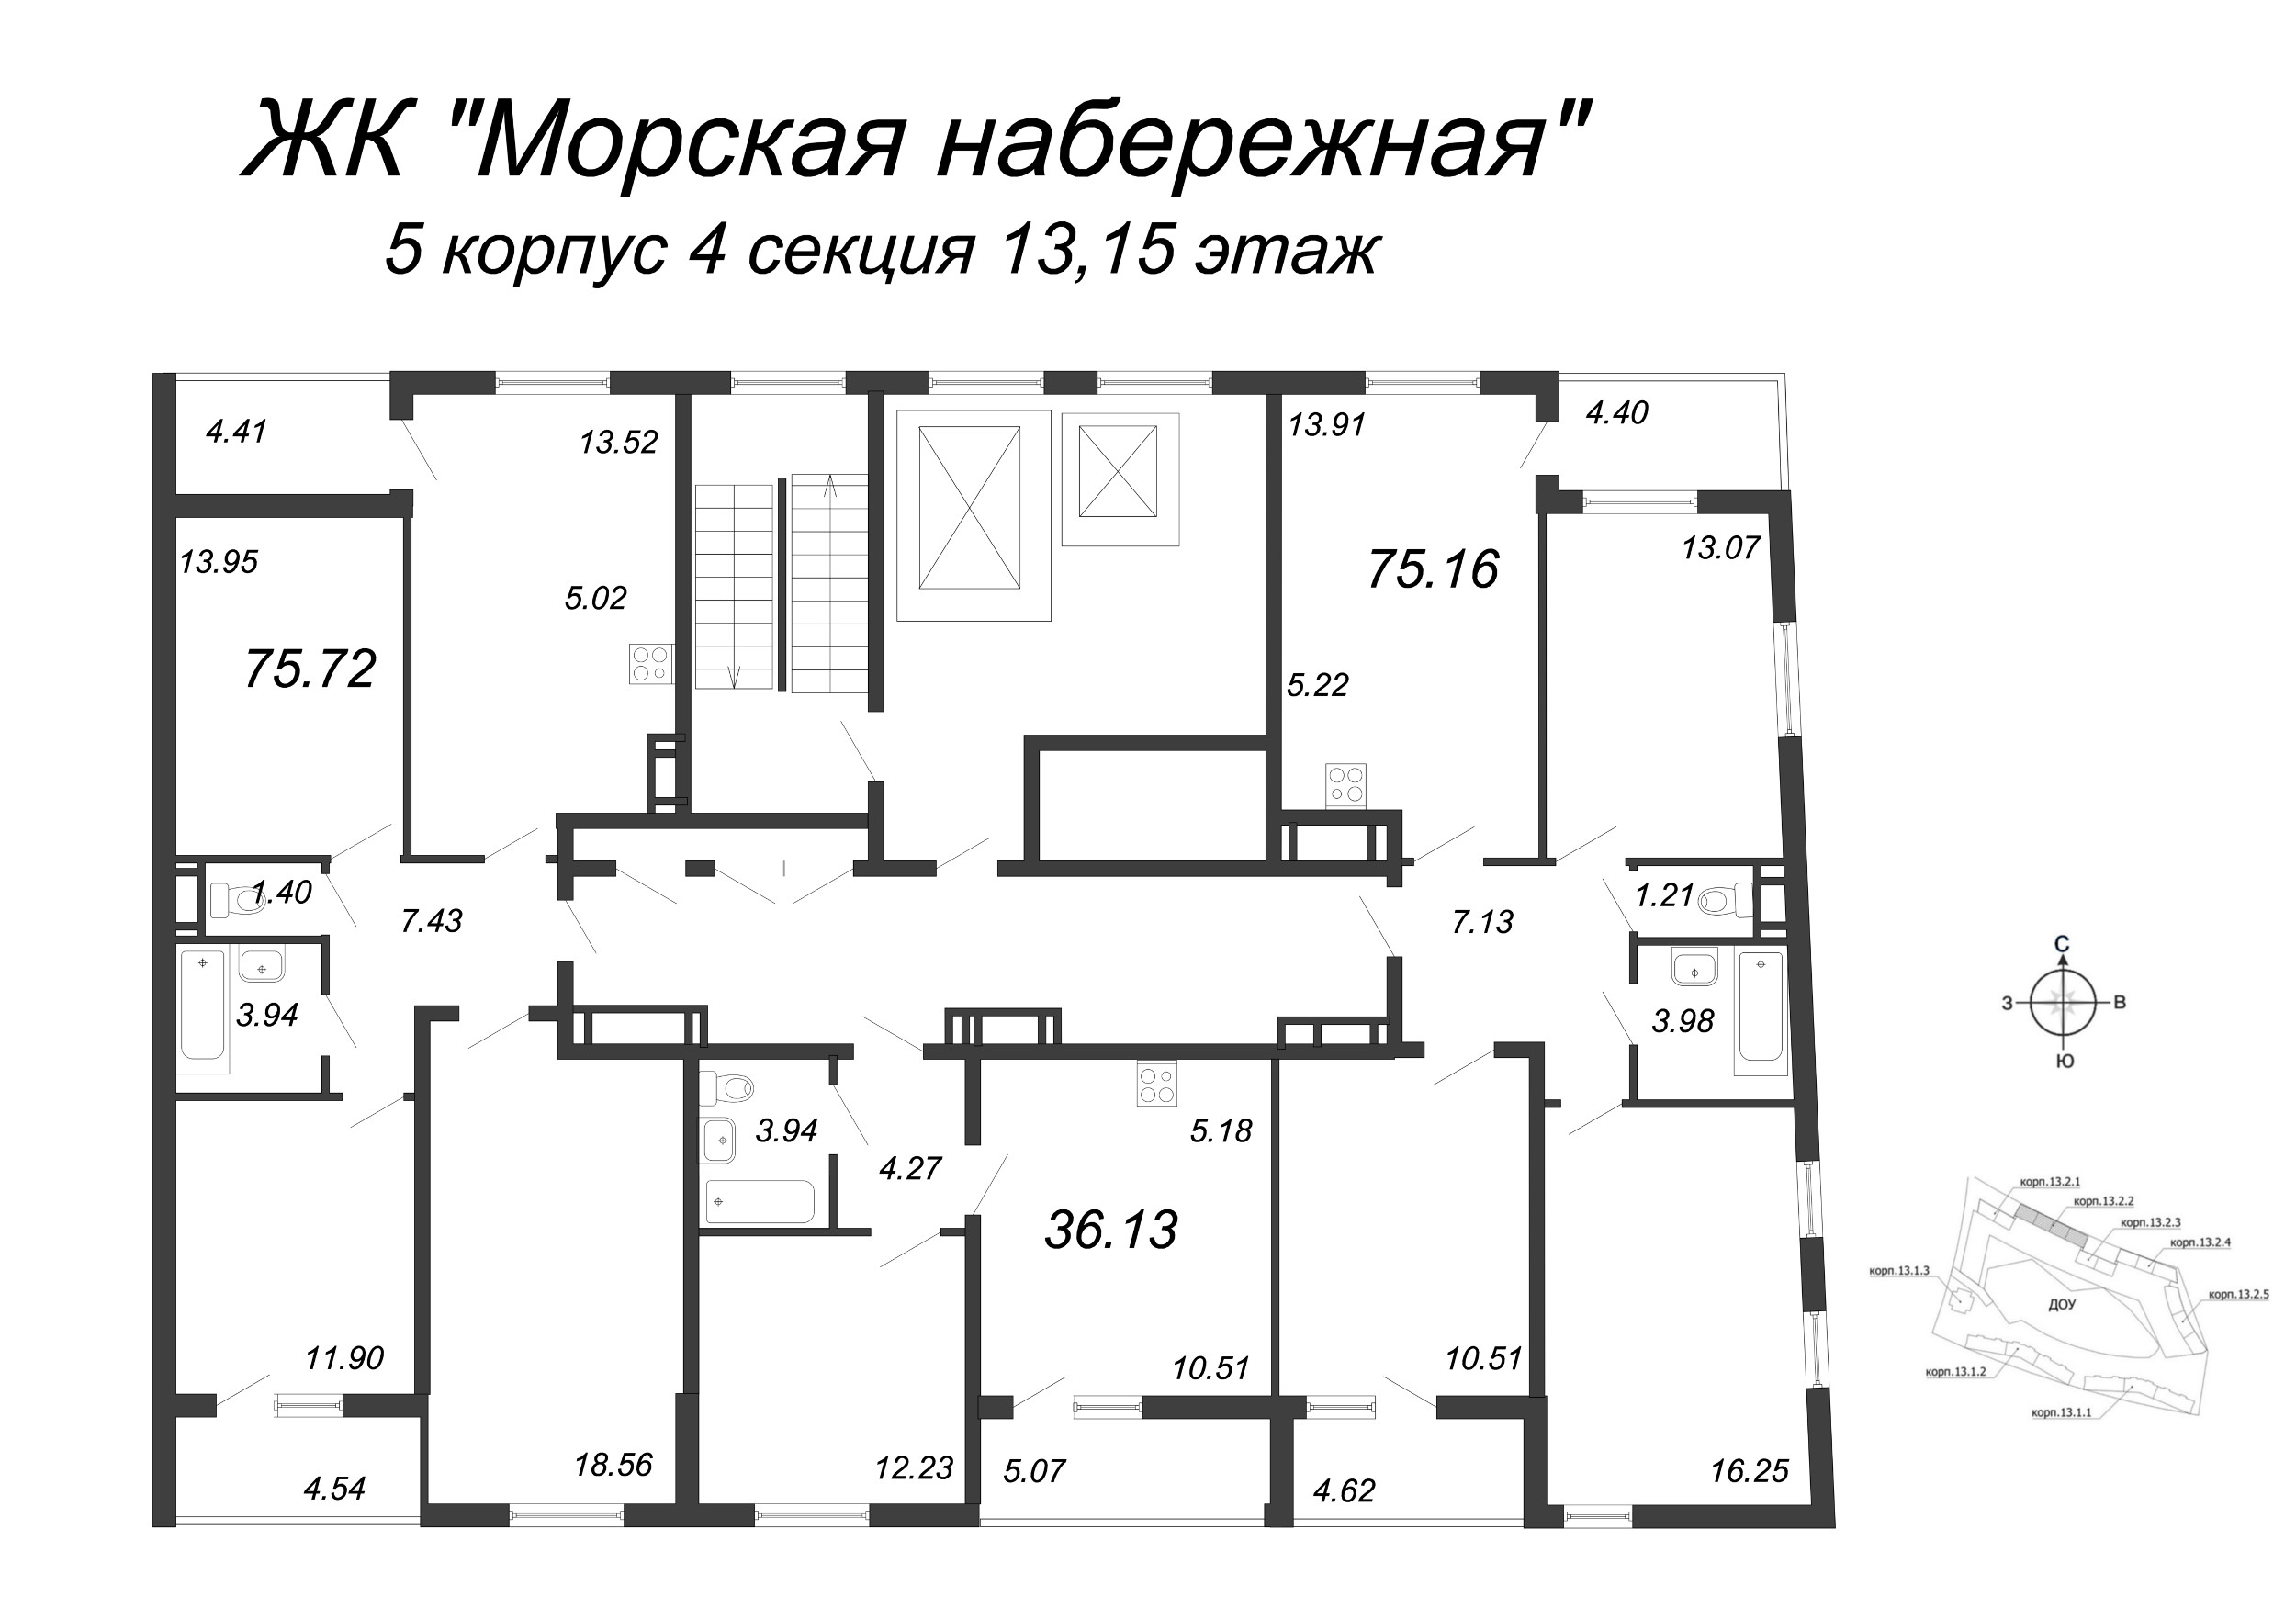 4-комнатная (Евро) квартира, 79.8 м² в ЖК "Морская набережная" - планировка этажа